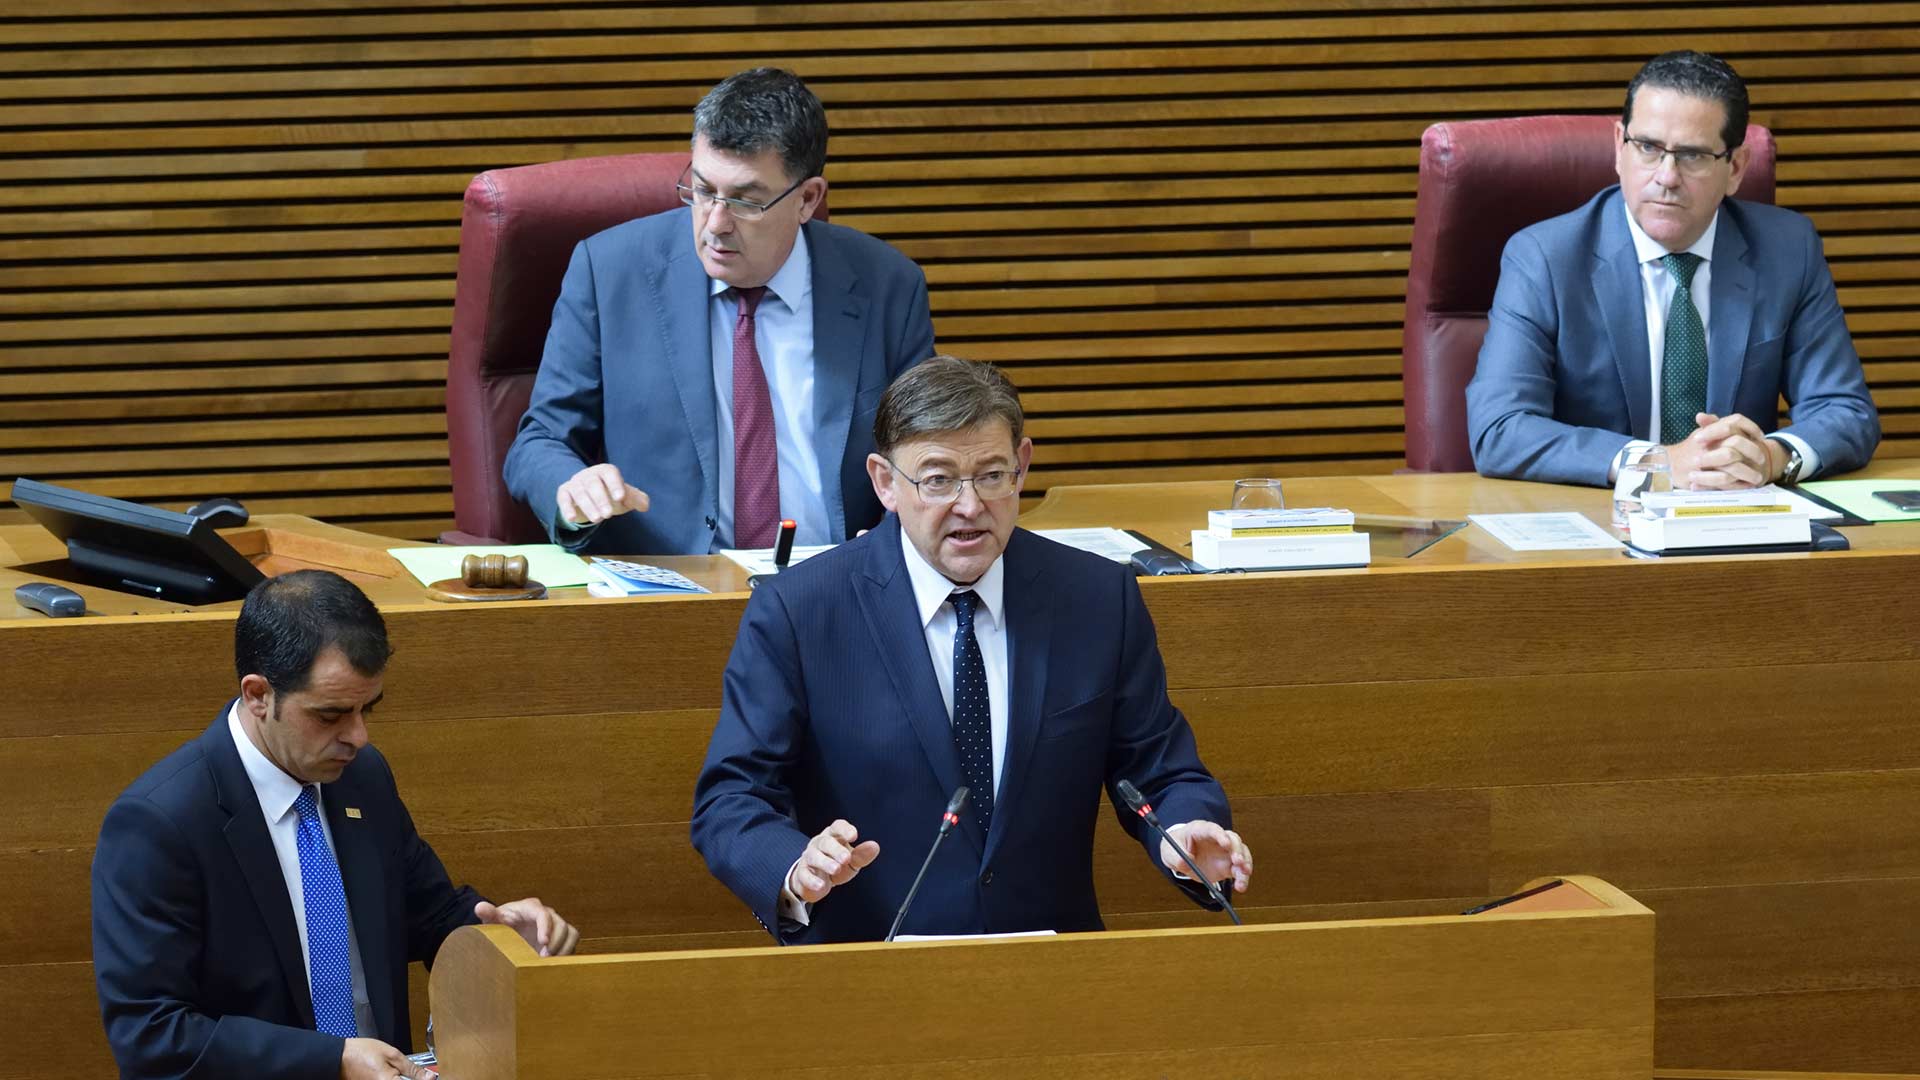 El socialista Ximo Puig es reelegido presidente de la Generalitat Valenciana